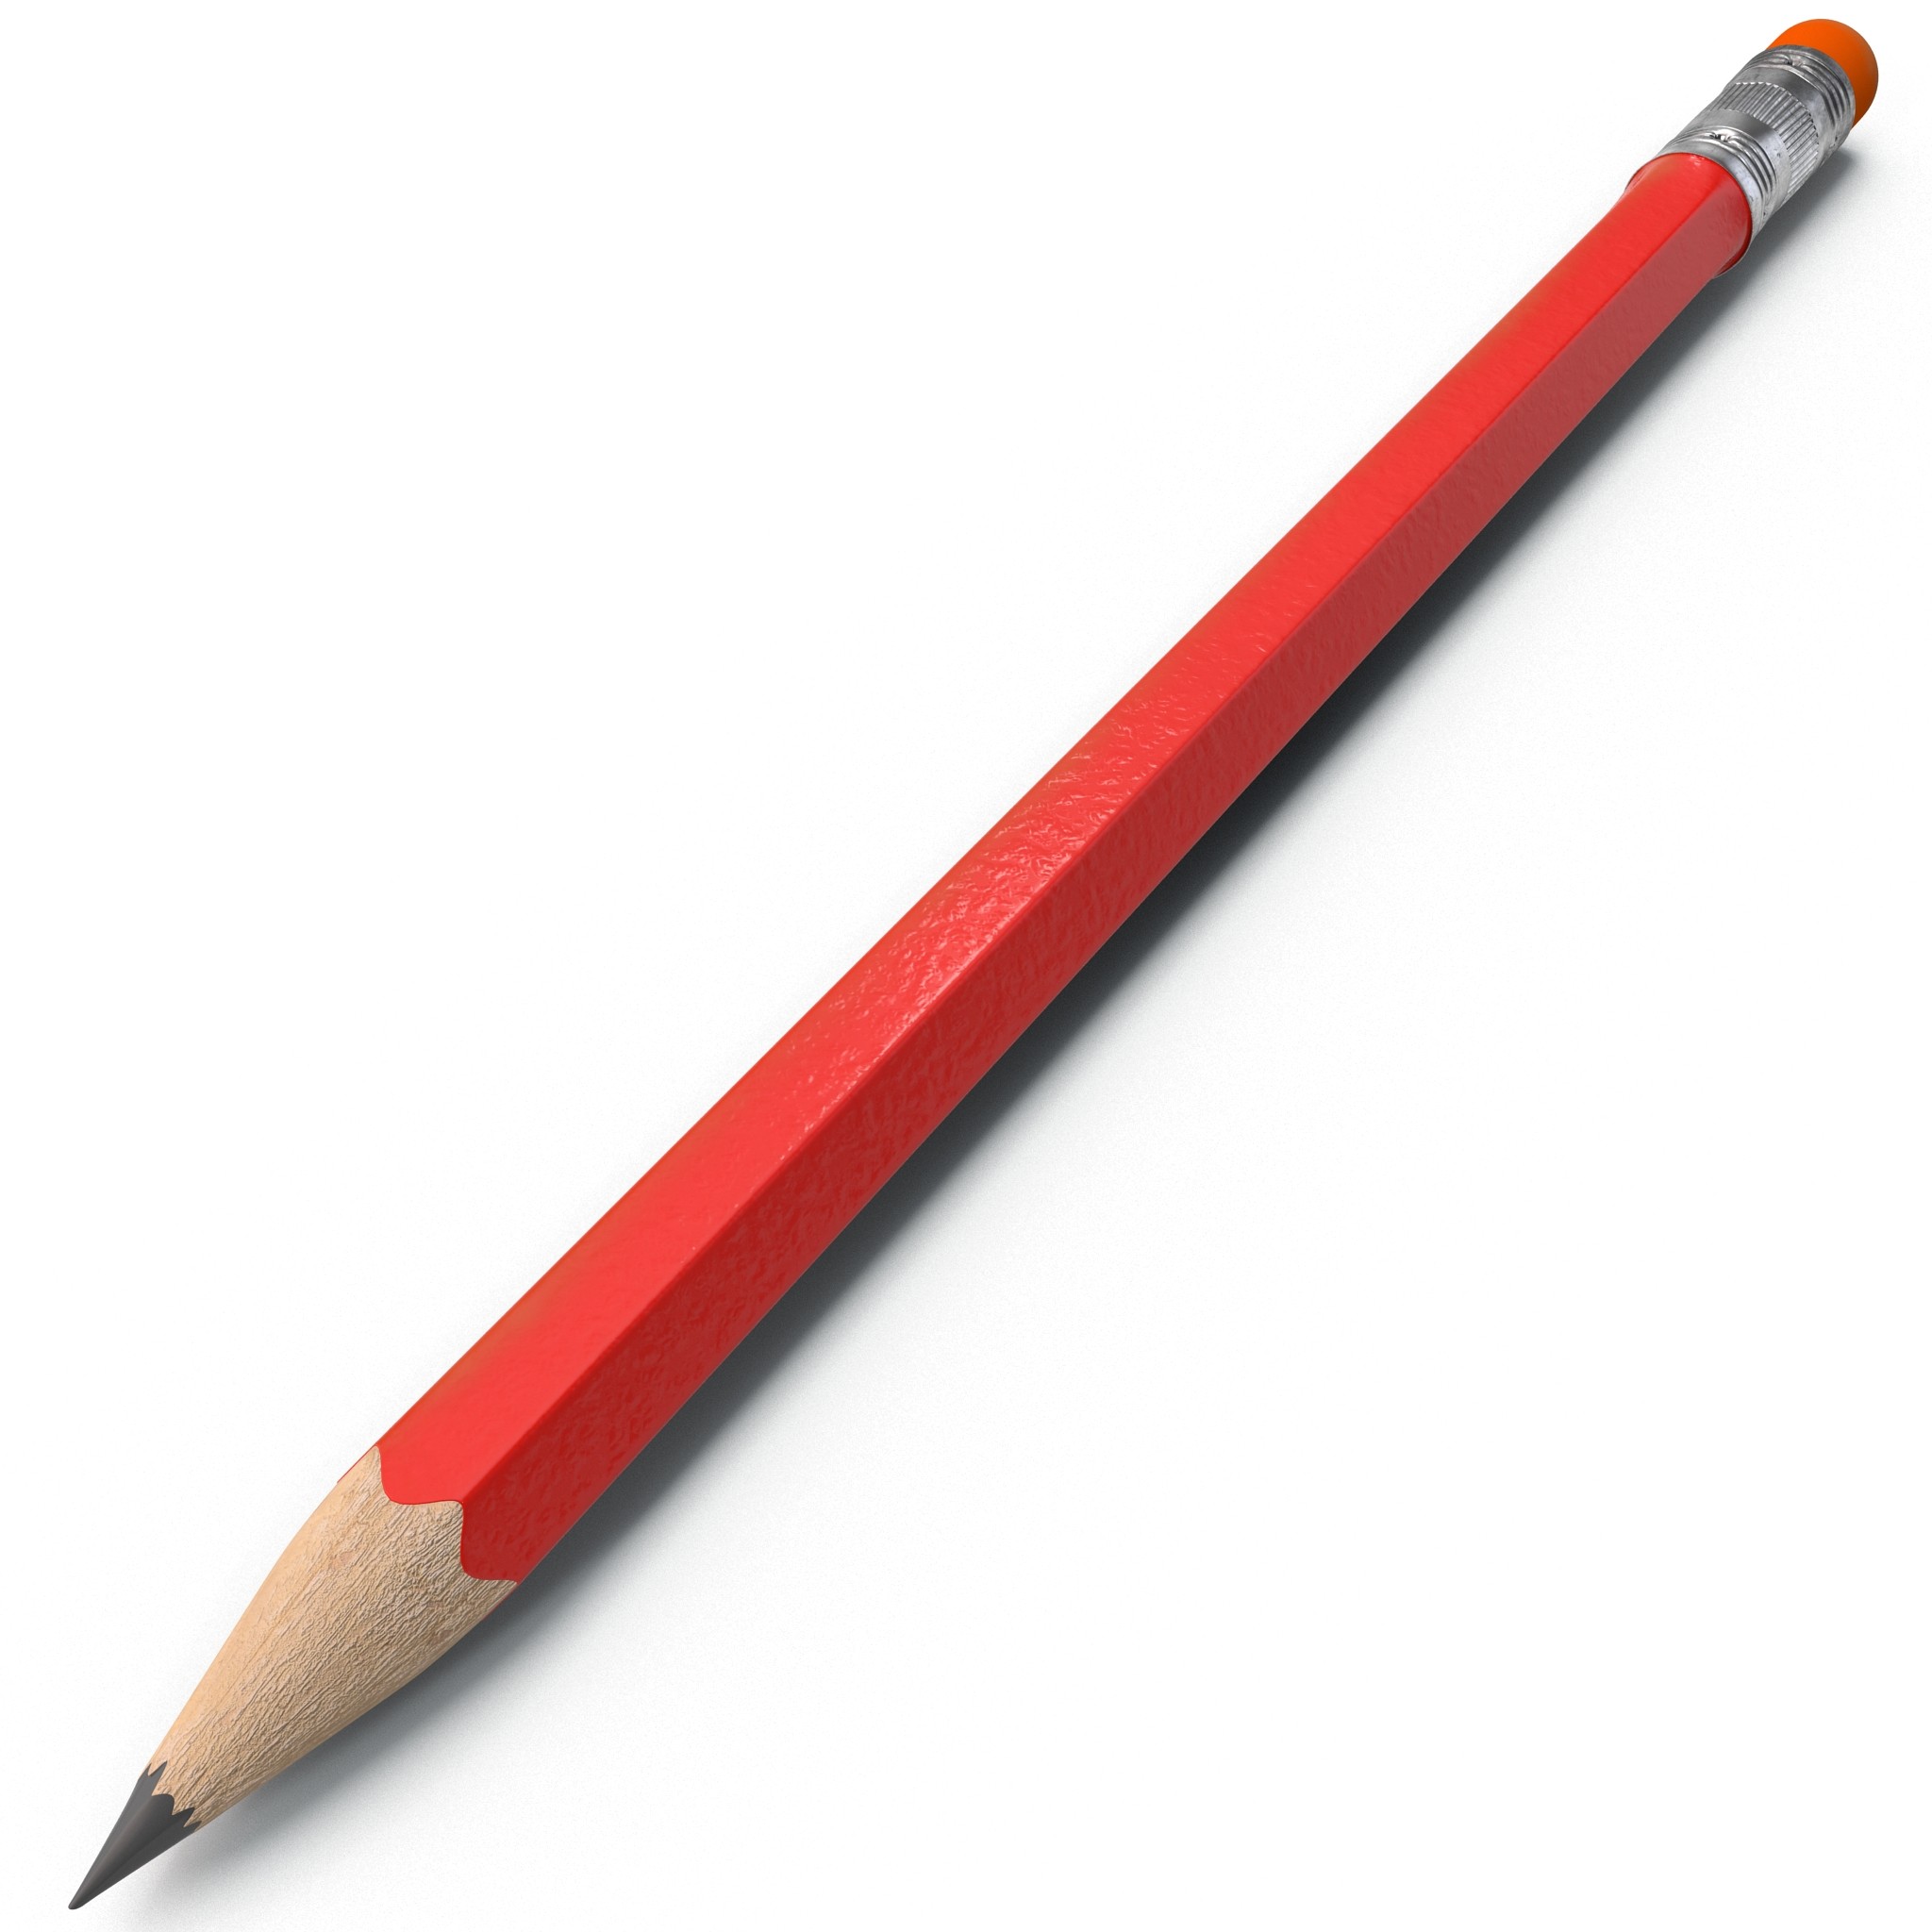 Pencil #5